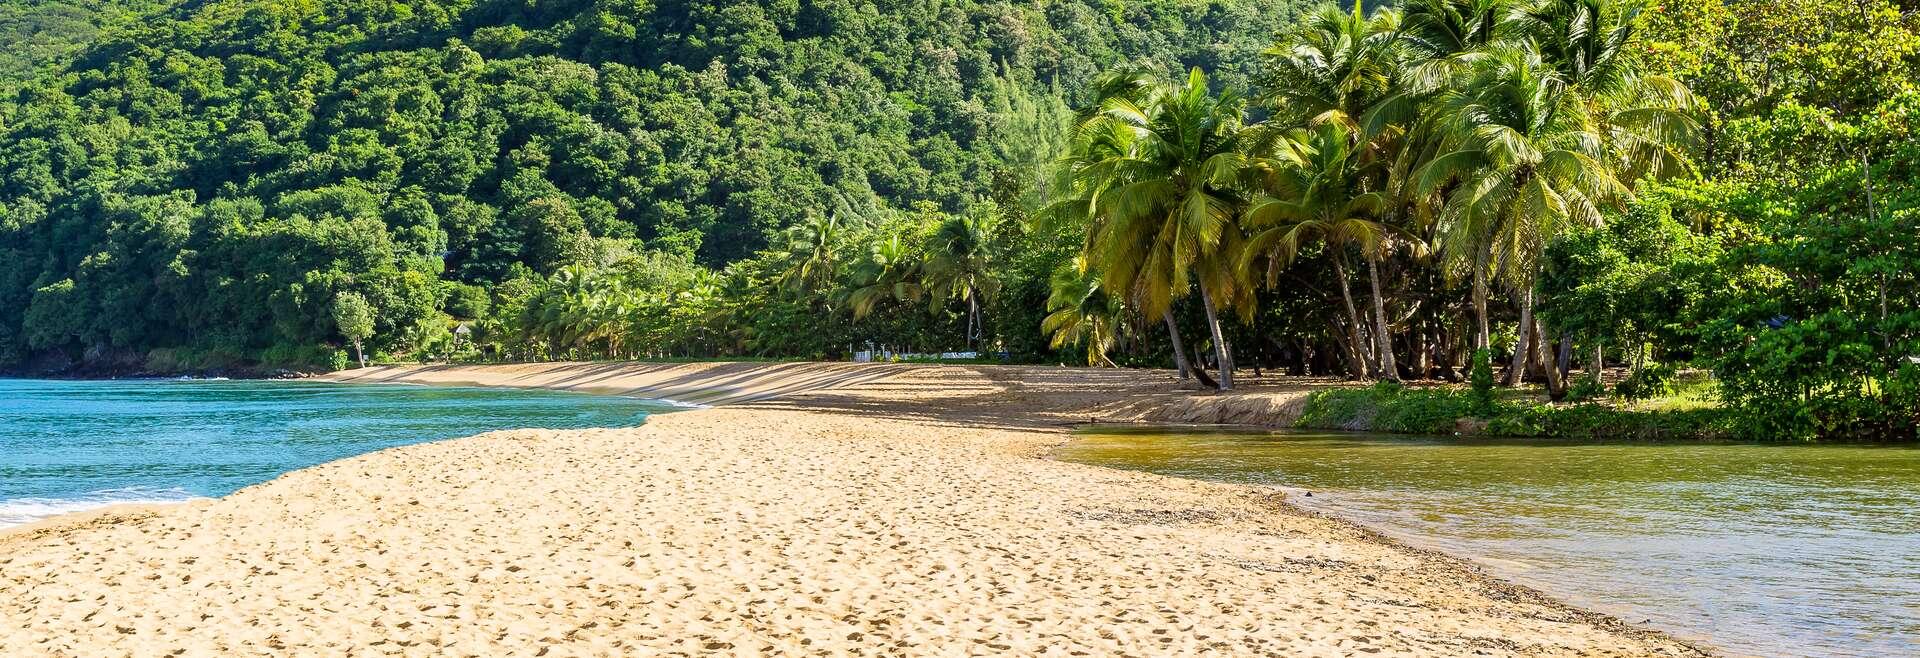 Séjour linguistique Guadeloupe, Le Gosier, plage